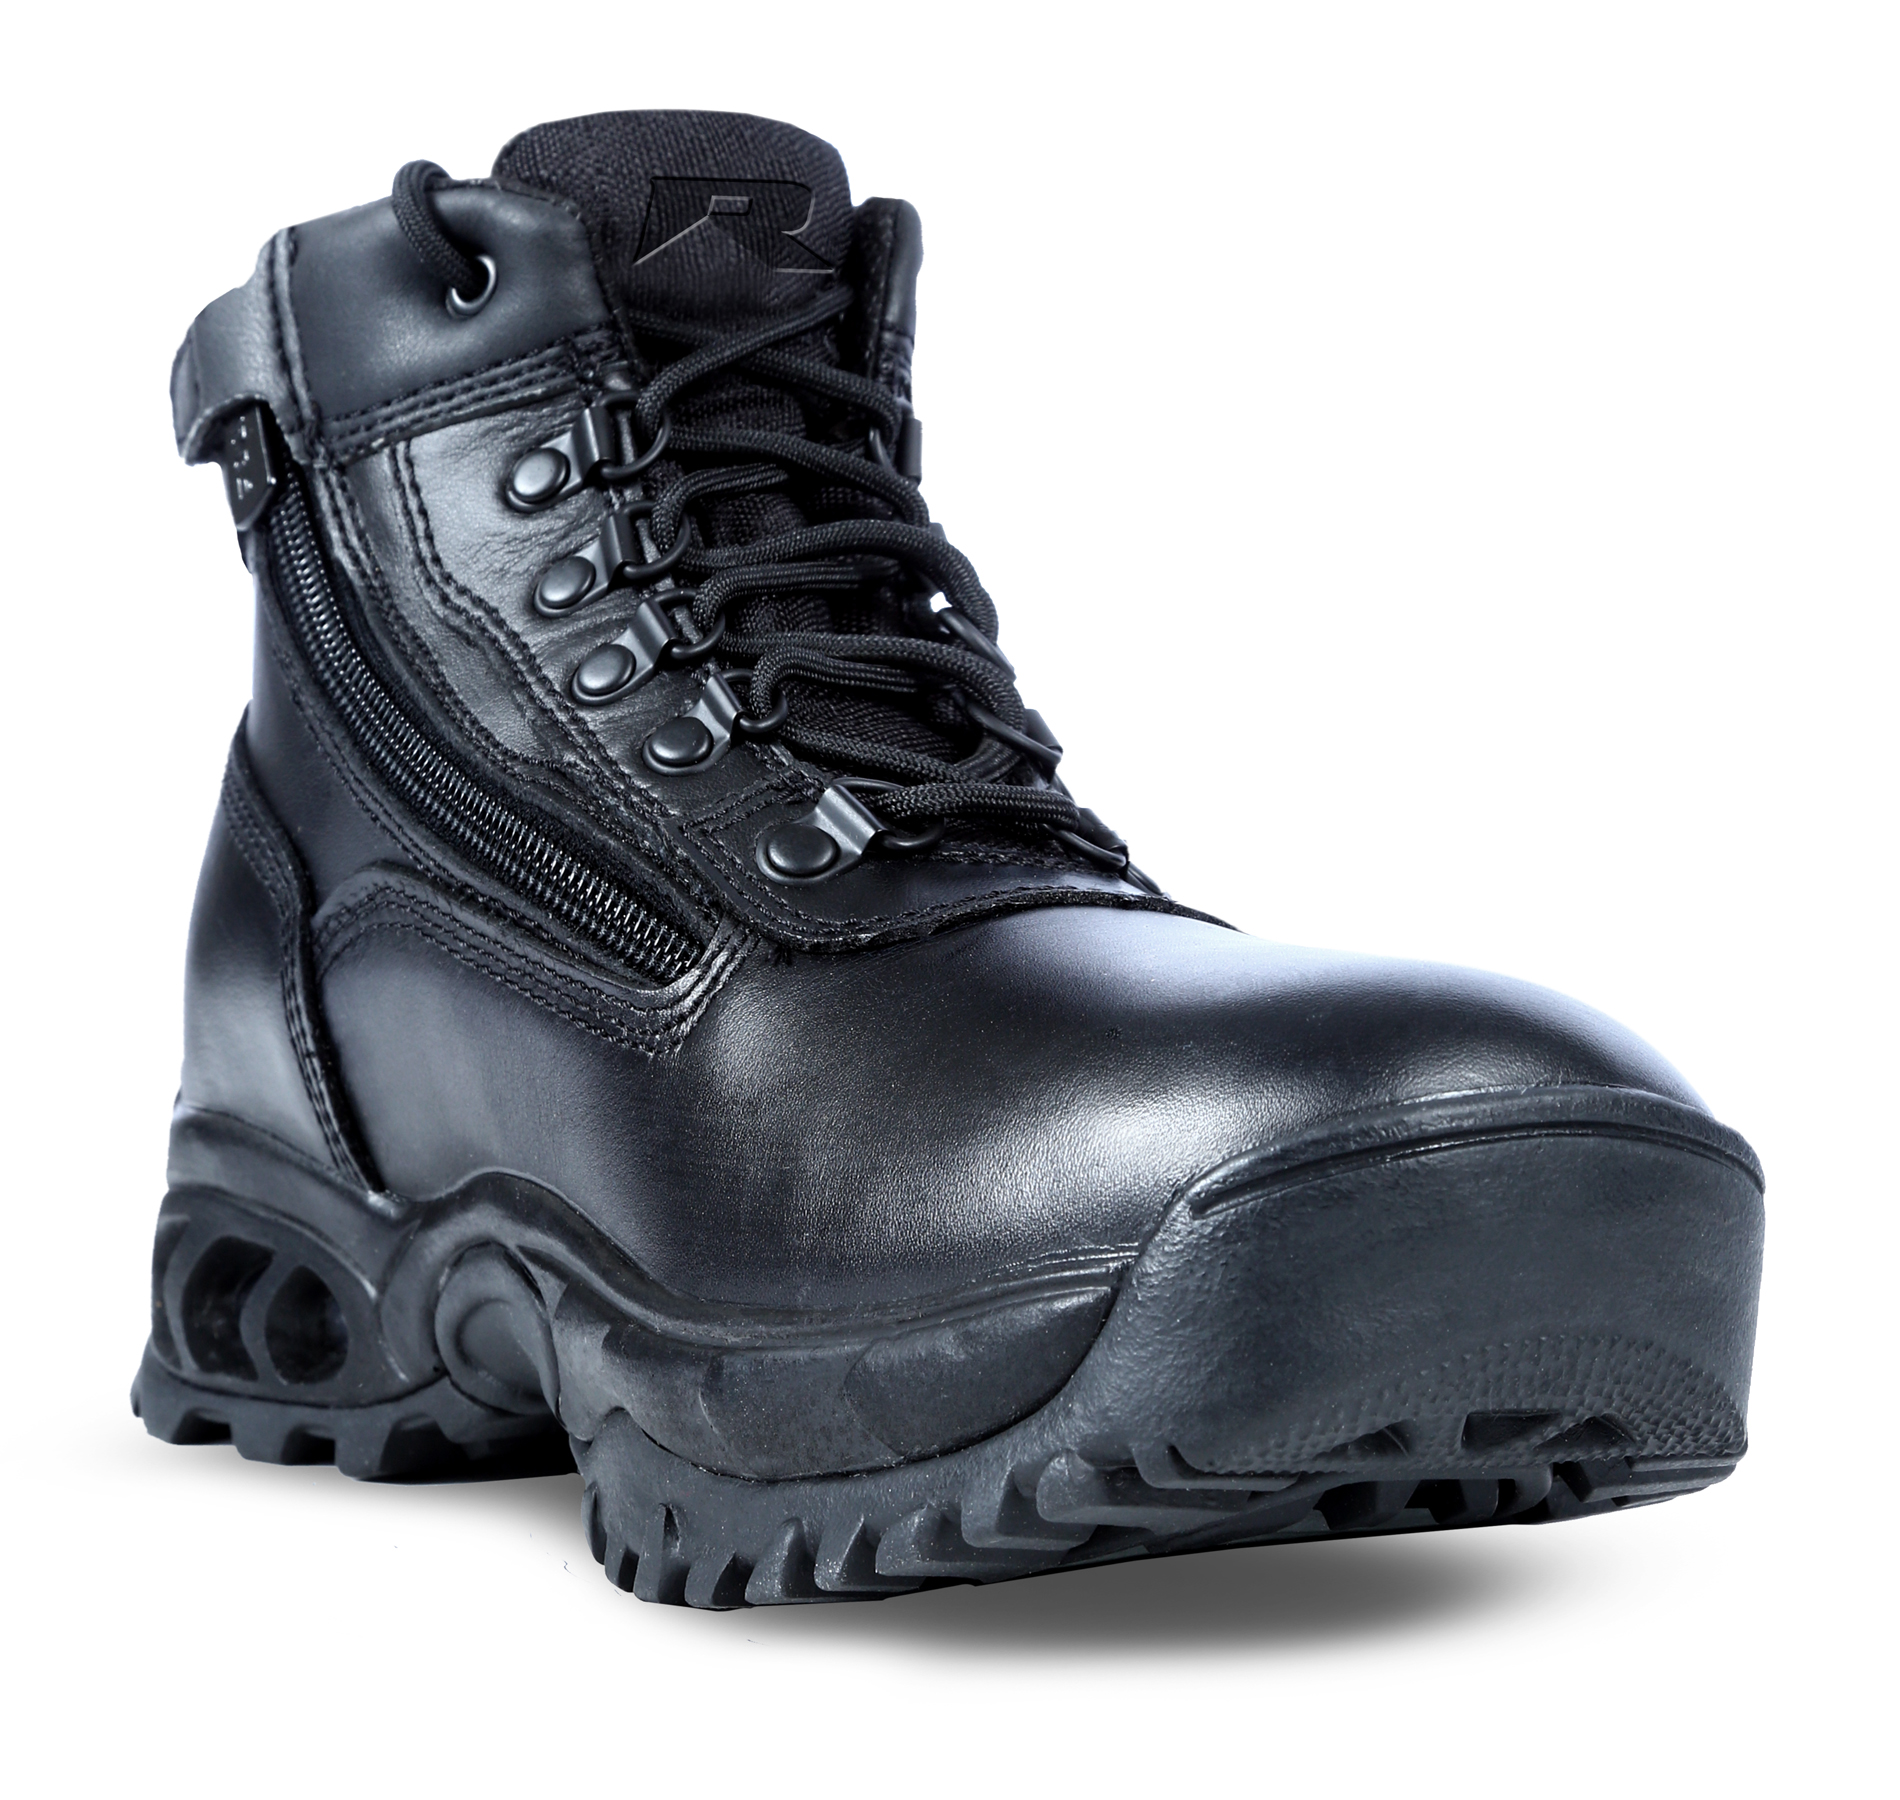 Ridge Footwear Men's Leather Waterproof Soft Toe Work Boot 8003ALWP Wide Avail - Black